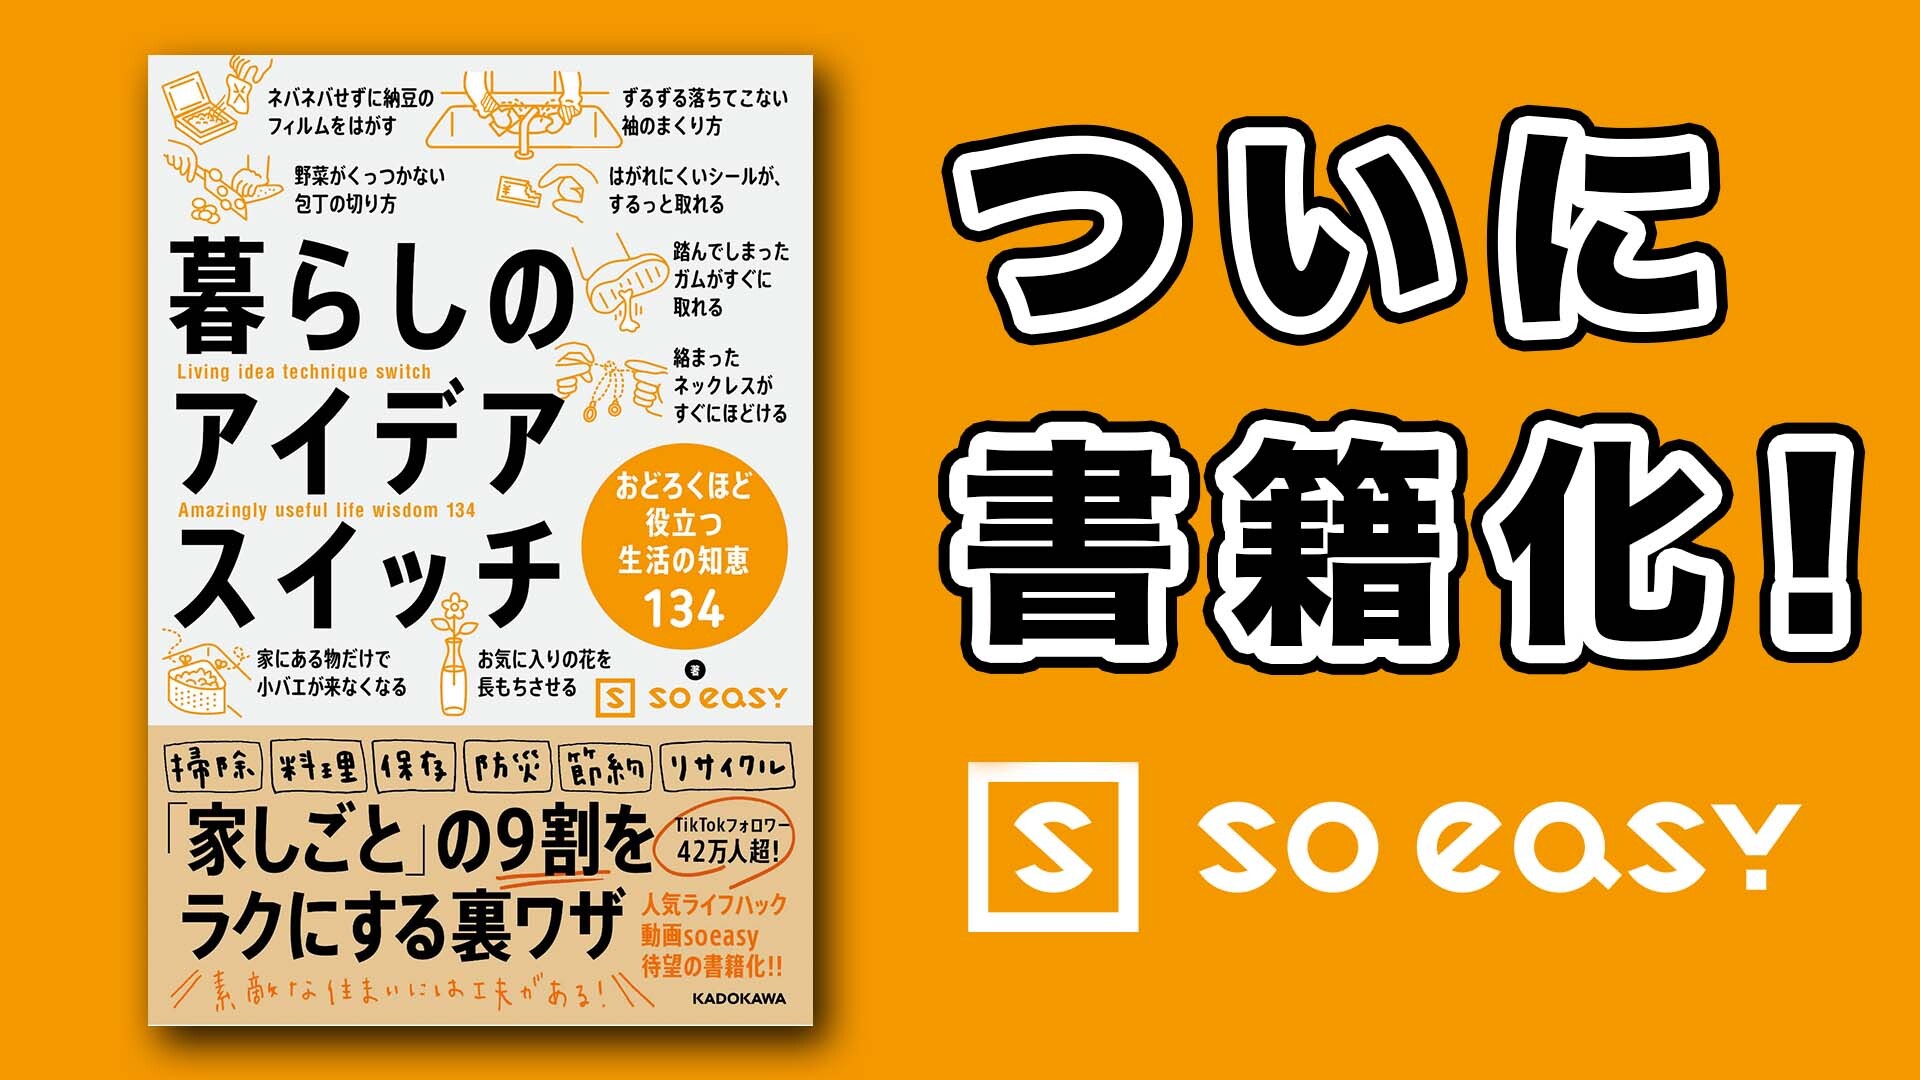 Soeasy【公式】ライフハック動画.jpg